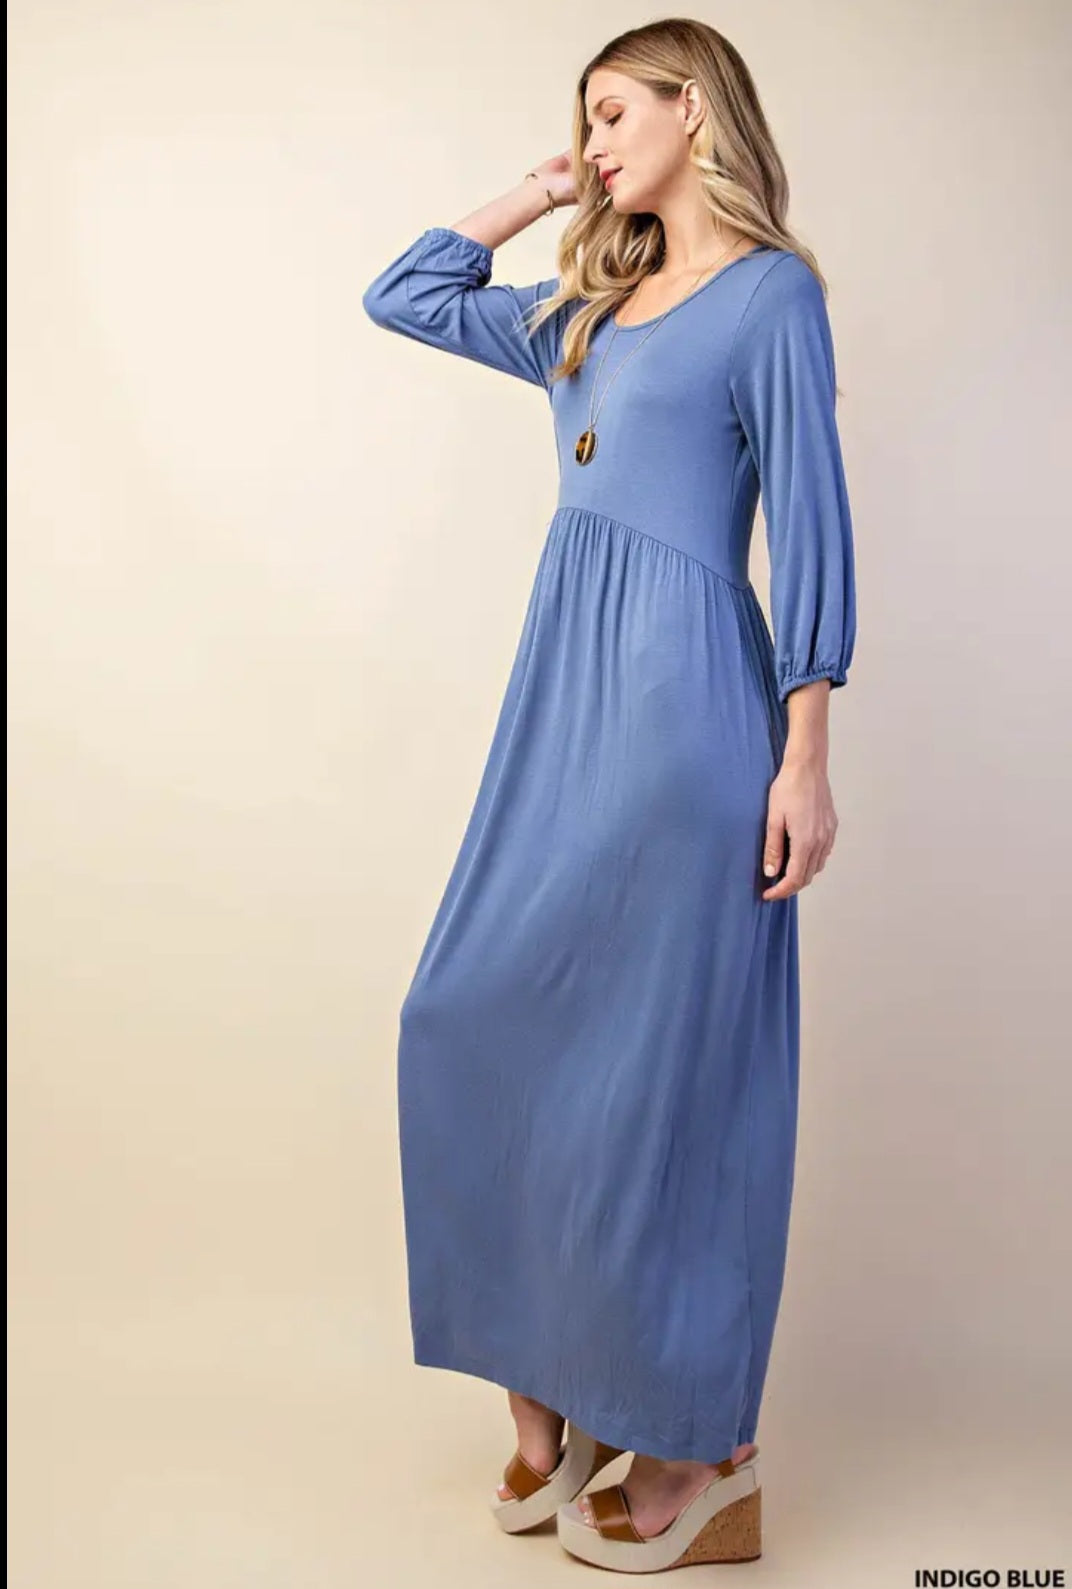 Maxi Length Dusty Blue Sleeveless Knit Dress